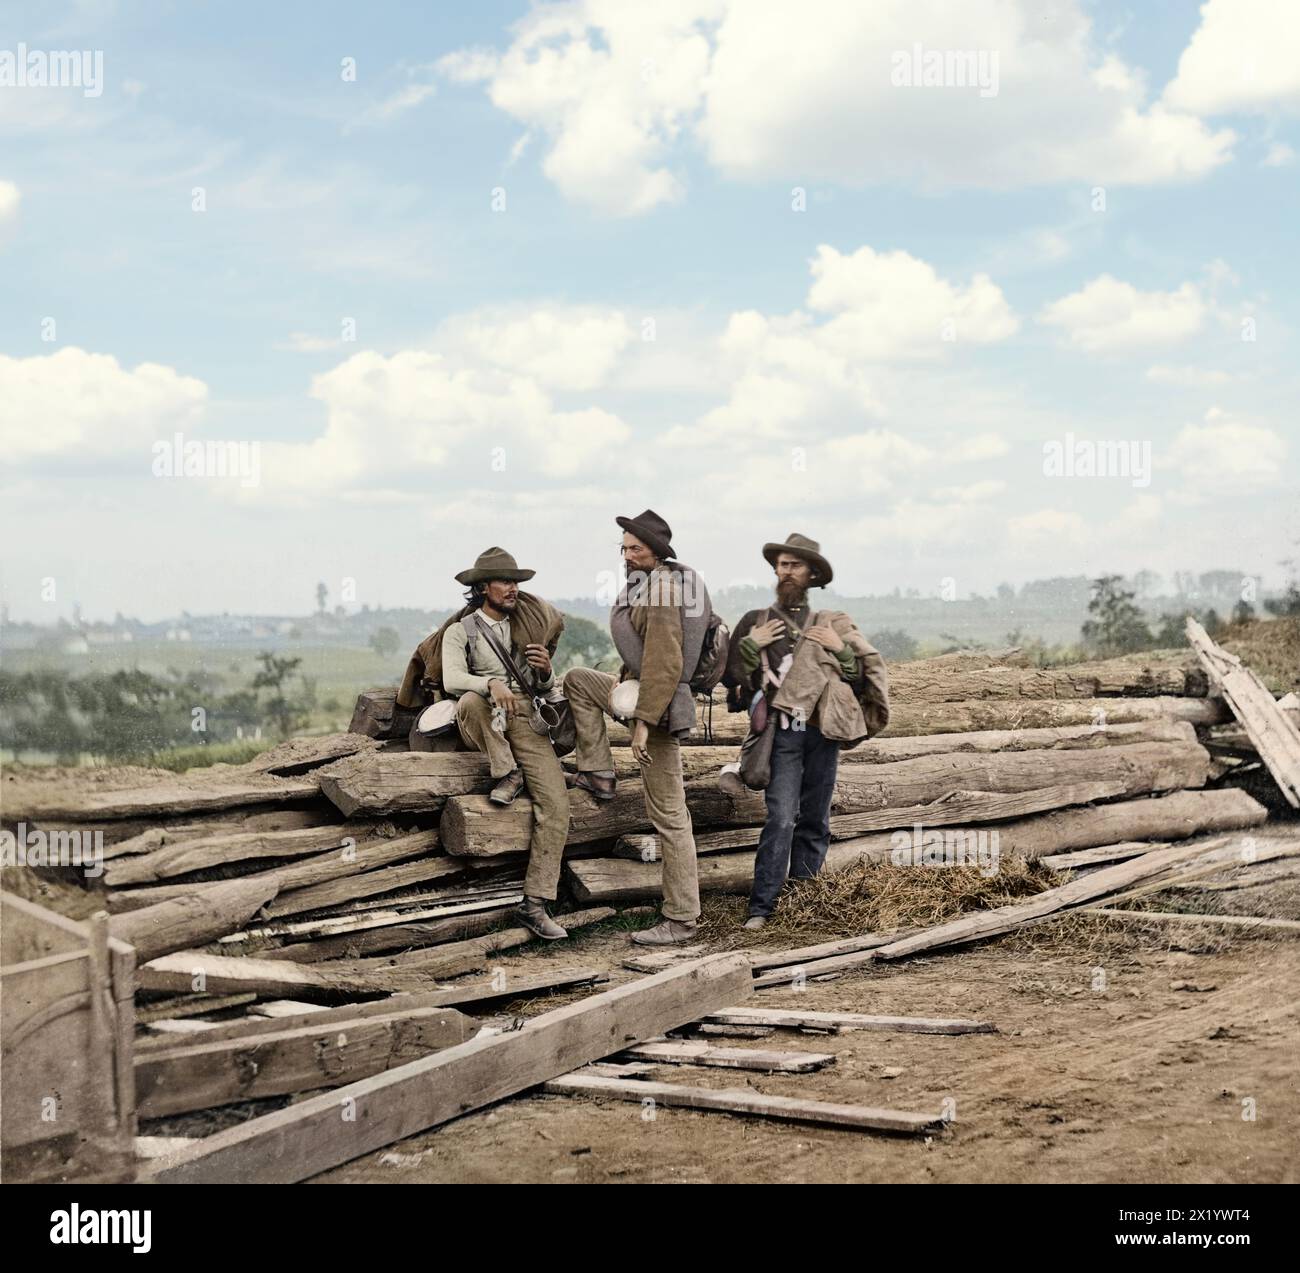 Drei Gefangene der Konföderierten am 1863. Juli auf dem Seminary Ridge in der Nähe von Gettysburg, Pennsylvania. Von Mathew Bradys Team von Fotografen. Der Himmel wurde in dieser Version ersetzt. Ausgezeichneter artikel mit zusätzlichen Informationen hier: https://www.militaryimagesmagazine-digital.com/2023/06/03/three-confederate-prisoners-at-gettysburg-exploring-the-vast-void-of-an-iconic-photograph/ Stockfoto